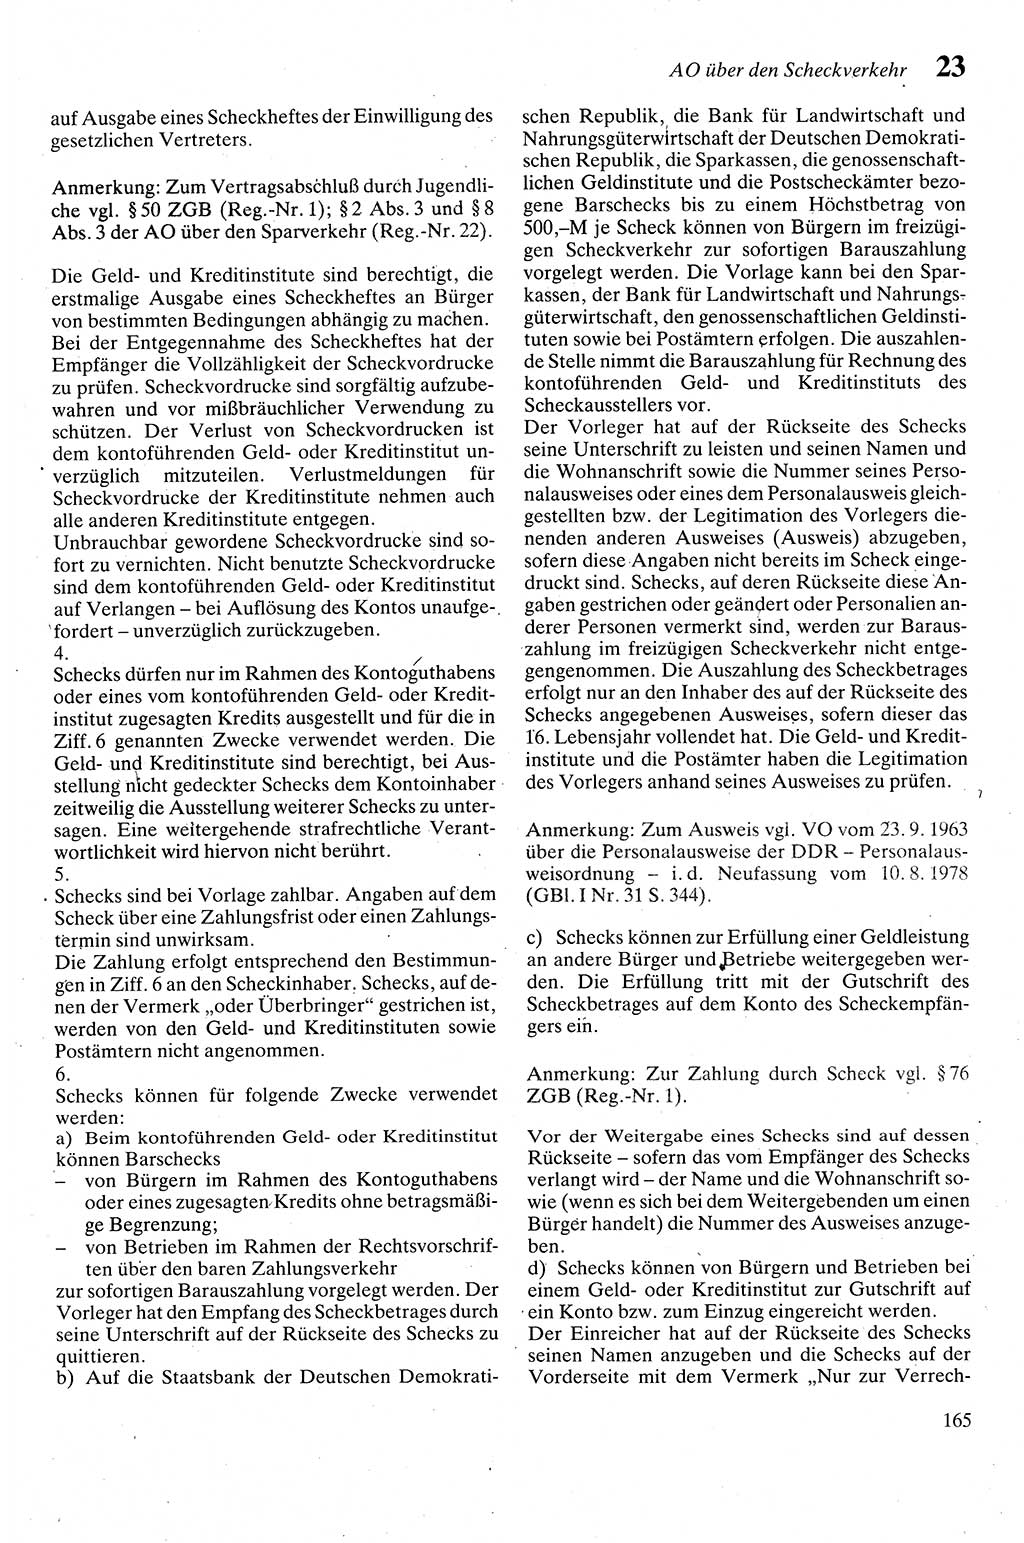 Zivilgesetzbuch (ZVG) sowie angrenzende Gesetze und Bestimmungen [Deutsche Demokratische Republik (DDR)] 1975, Seite 165 (ZGB Ges. Best. DDR 1975, S. 165)